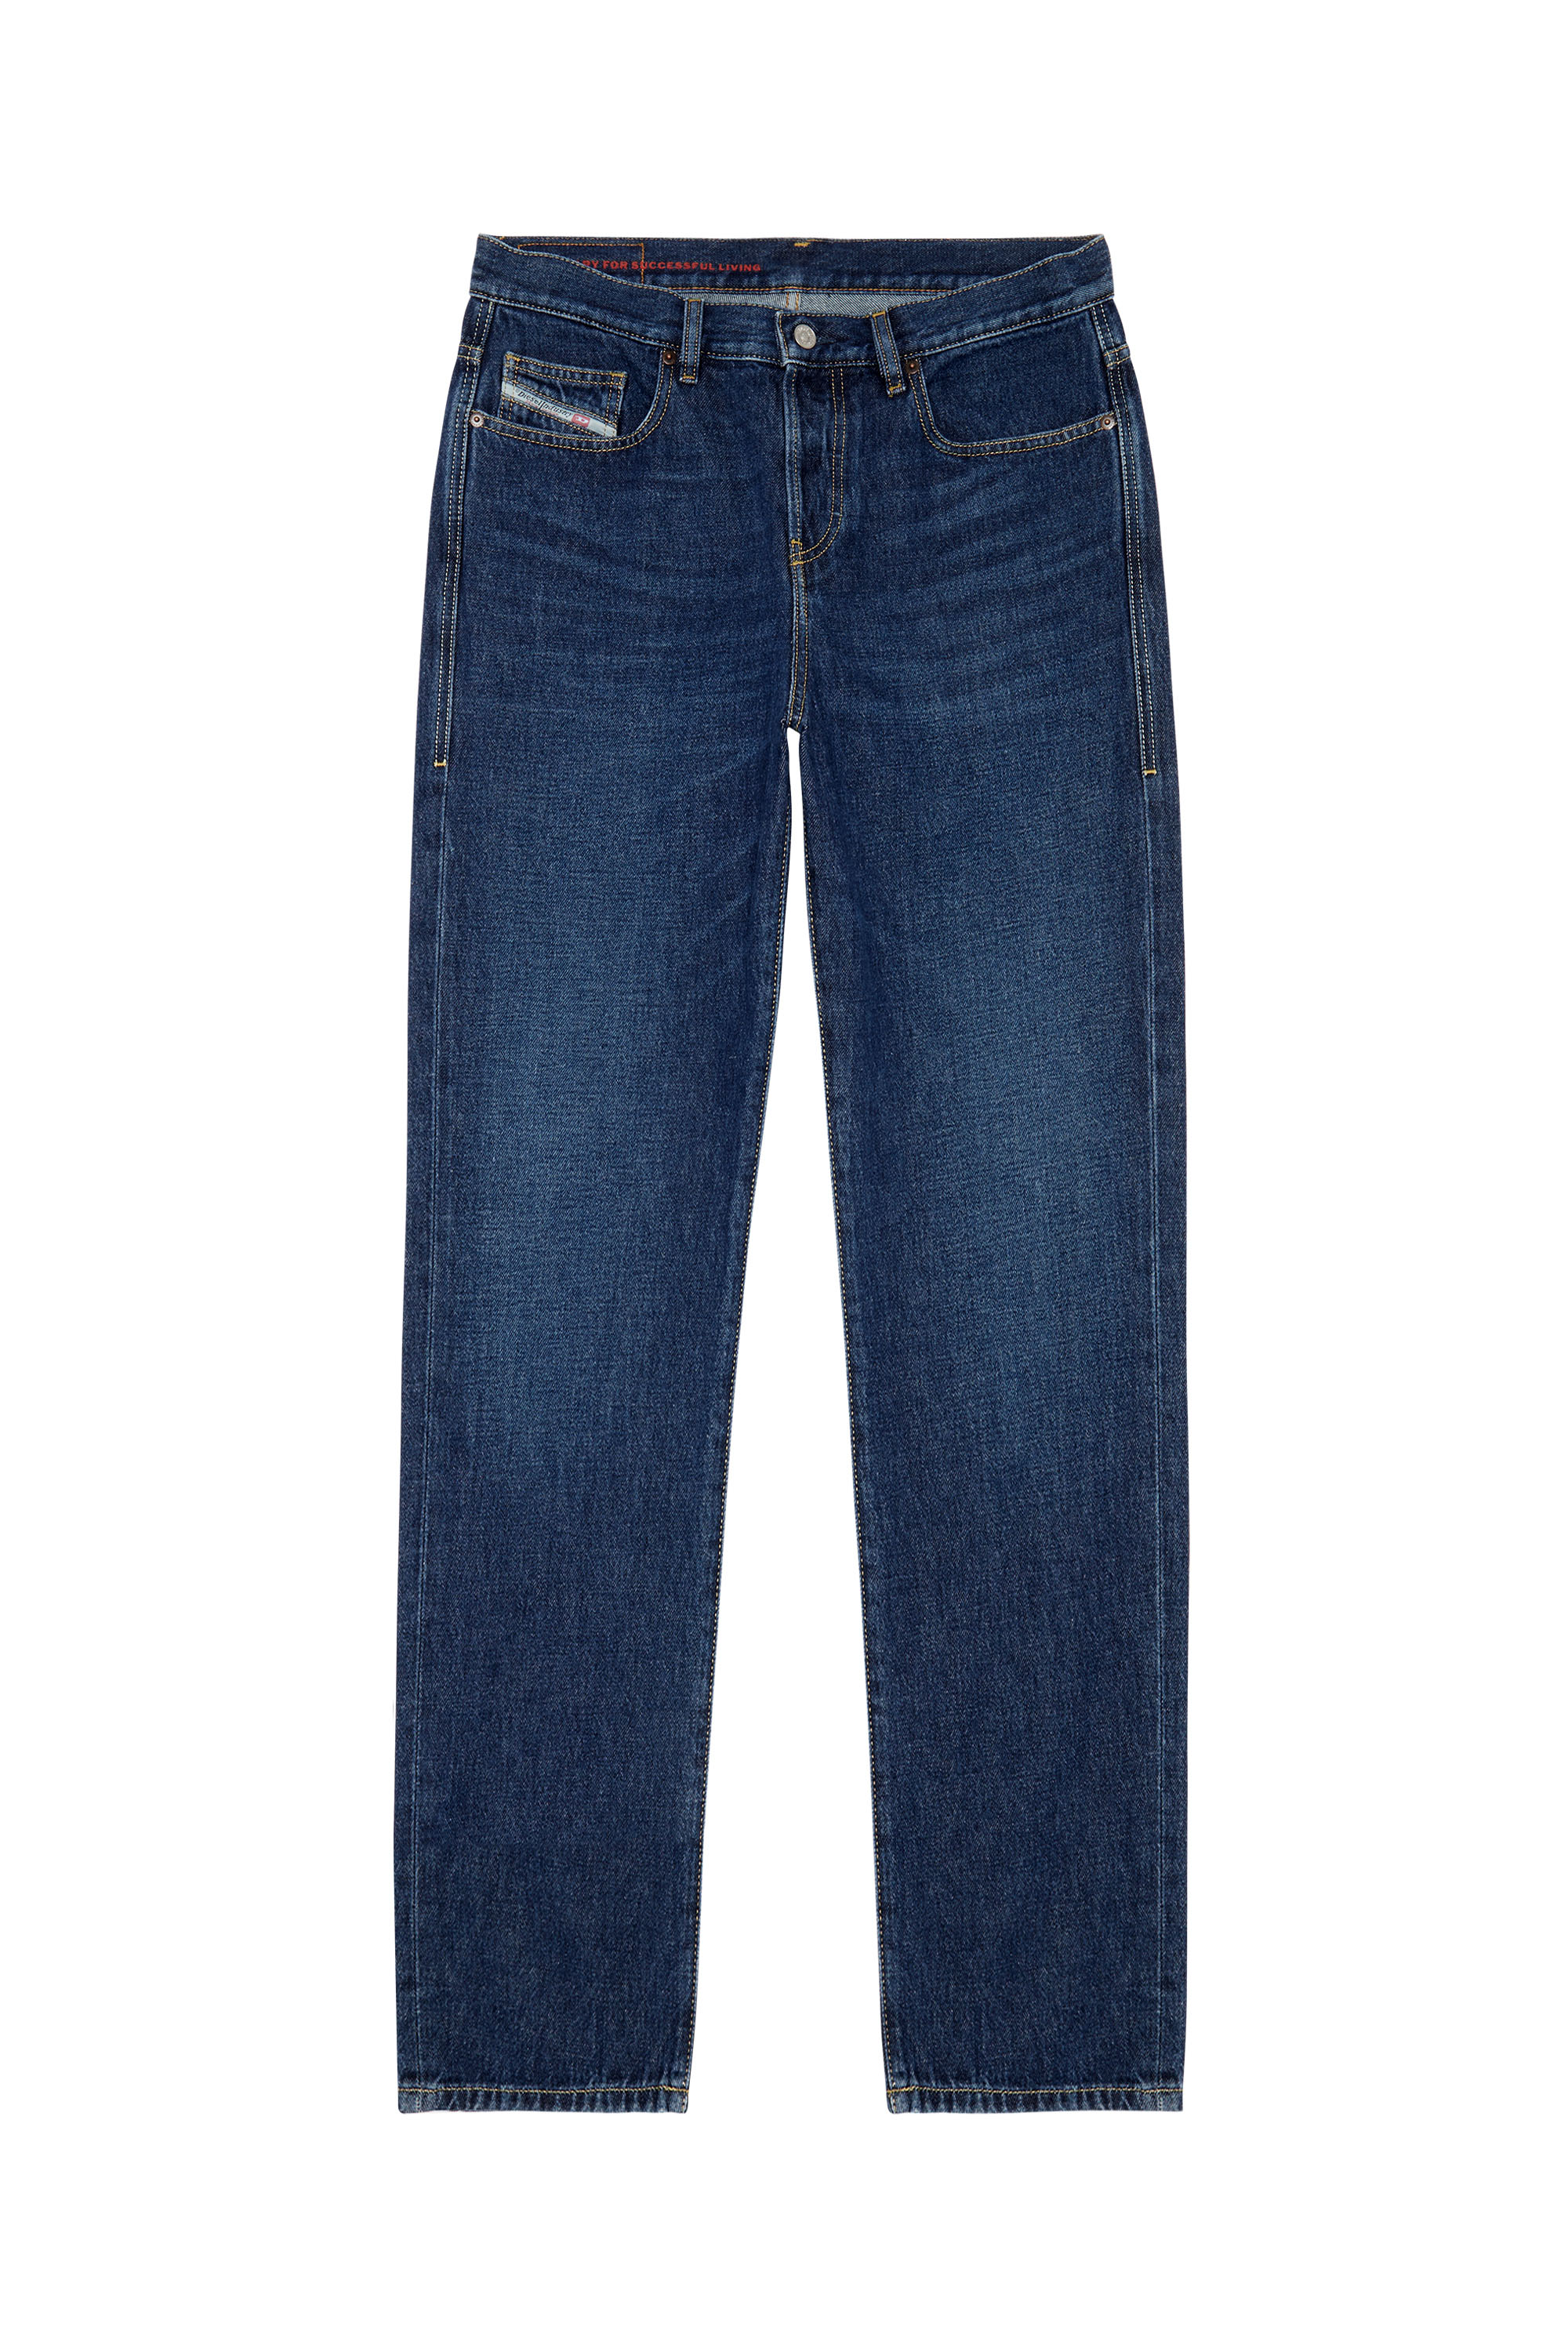 2020 D-VIKER 09C03 Straight Jeans, Bleu Foncé - Jeans